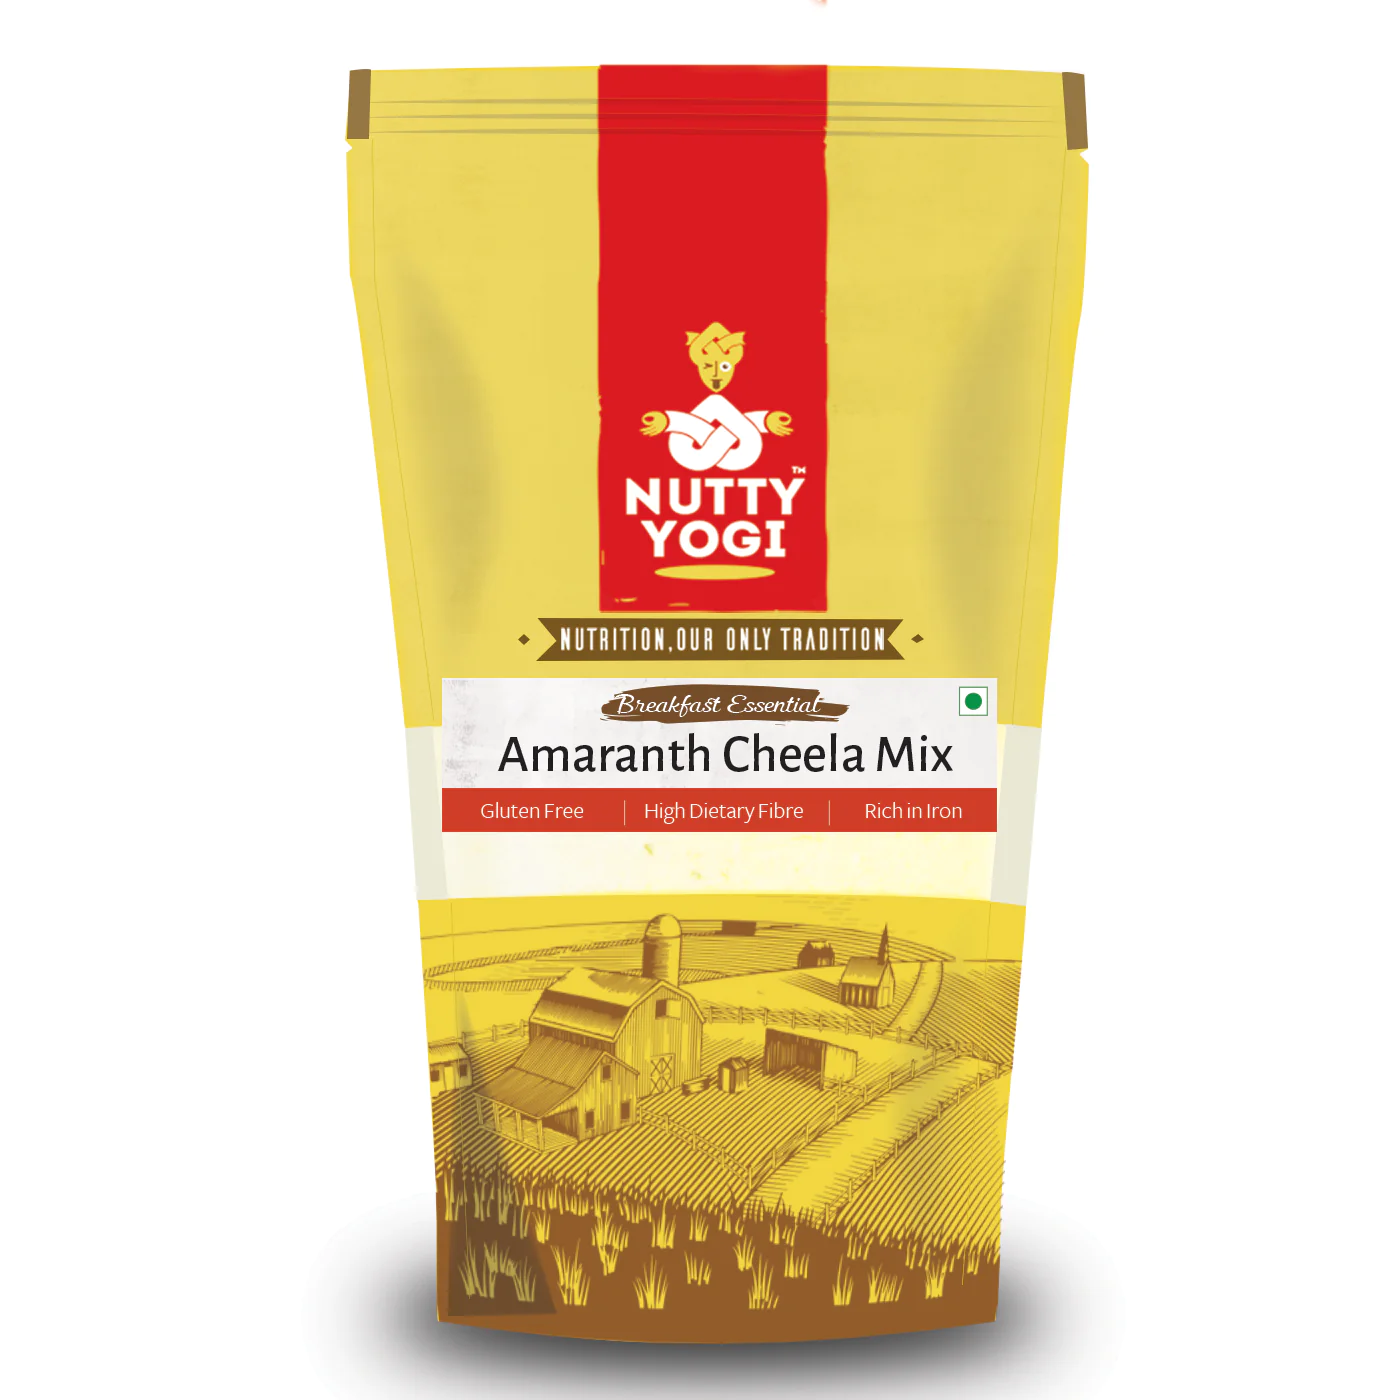 Product: Nutty Yogi Amaranth Cheela Mix